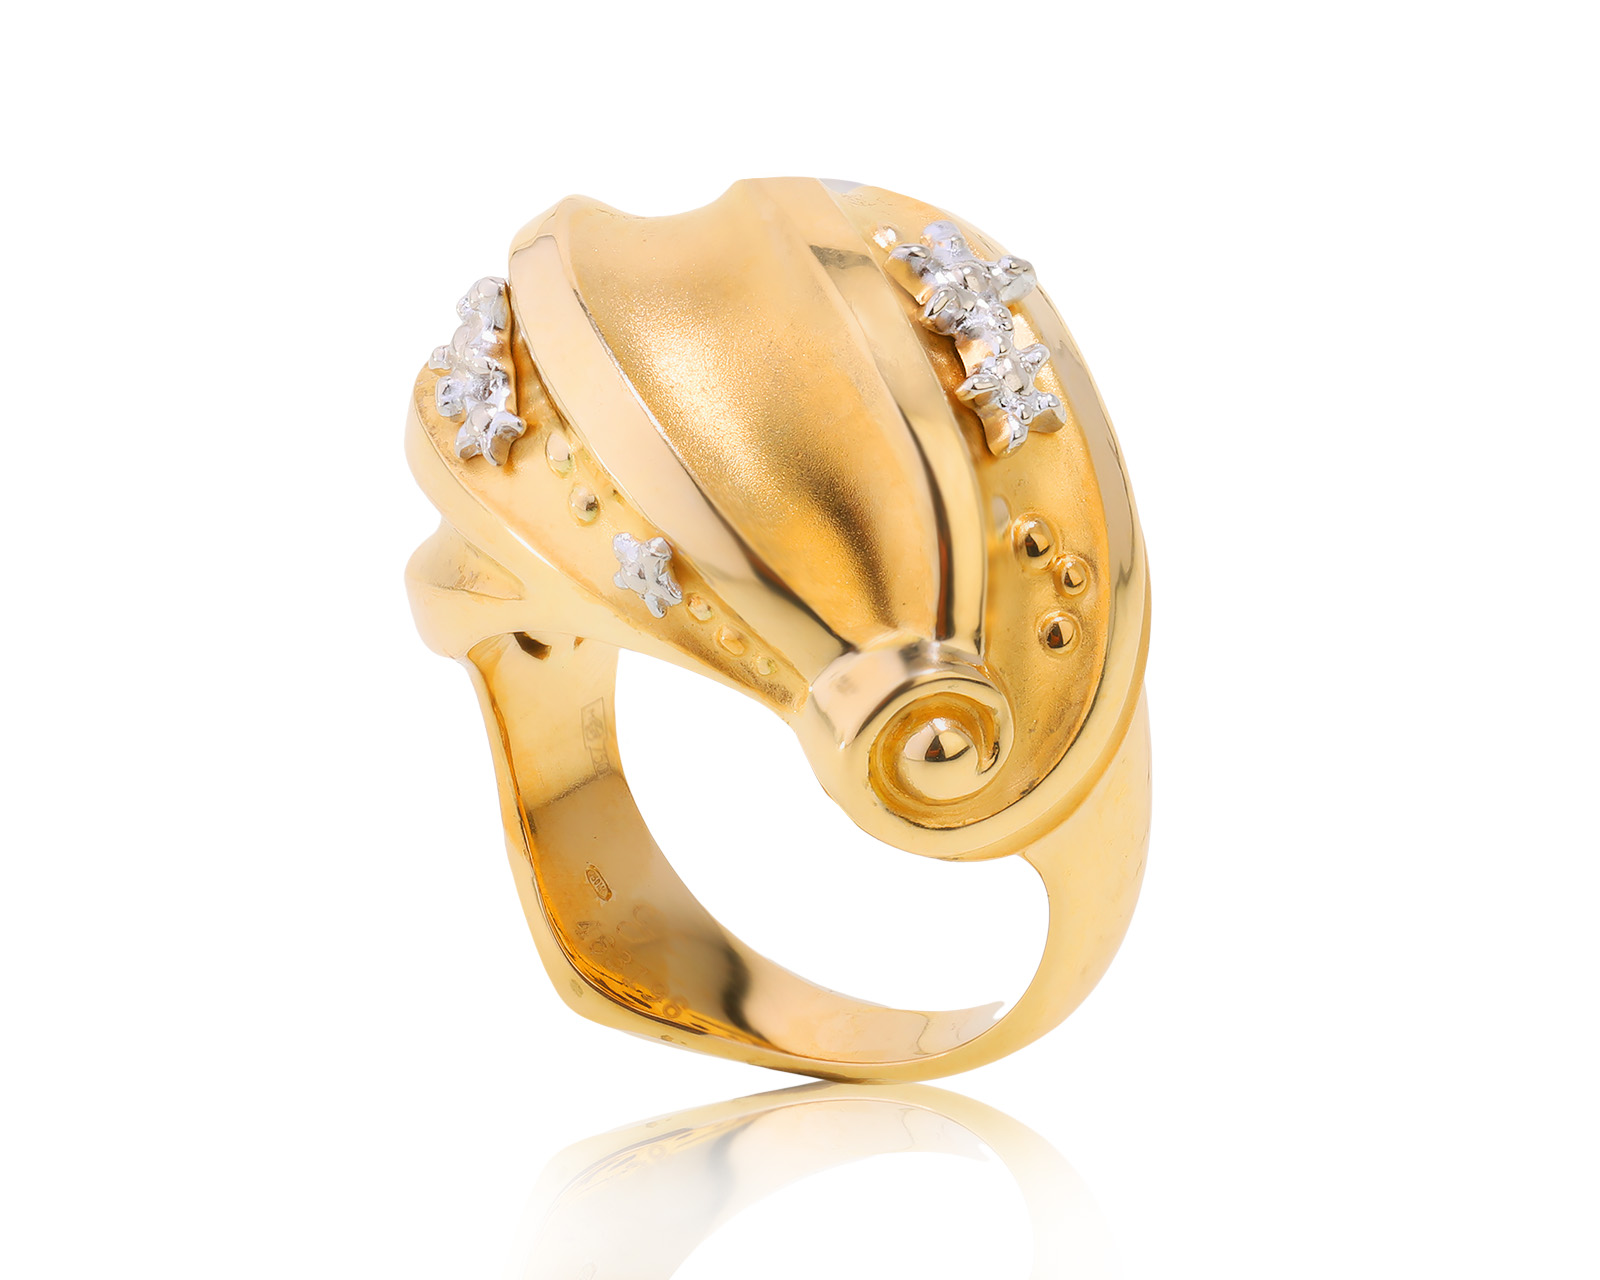 Оригинальное золотое кольцо Carrera y Carrera Mediterraneo Atenea